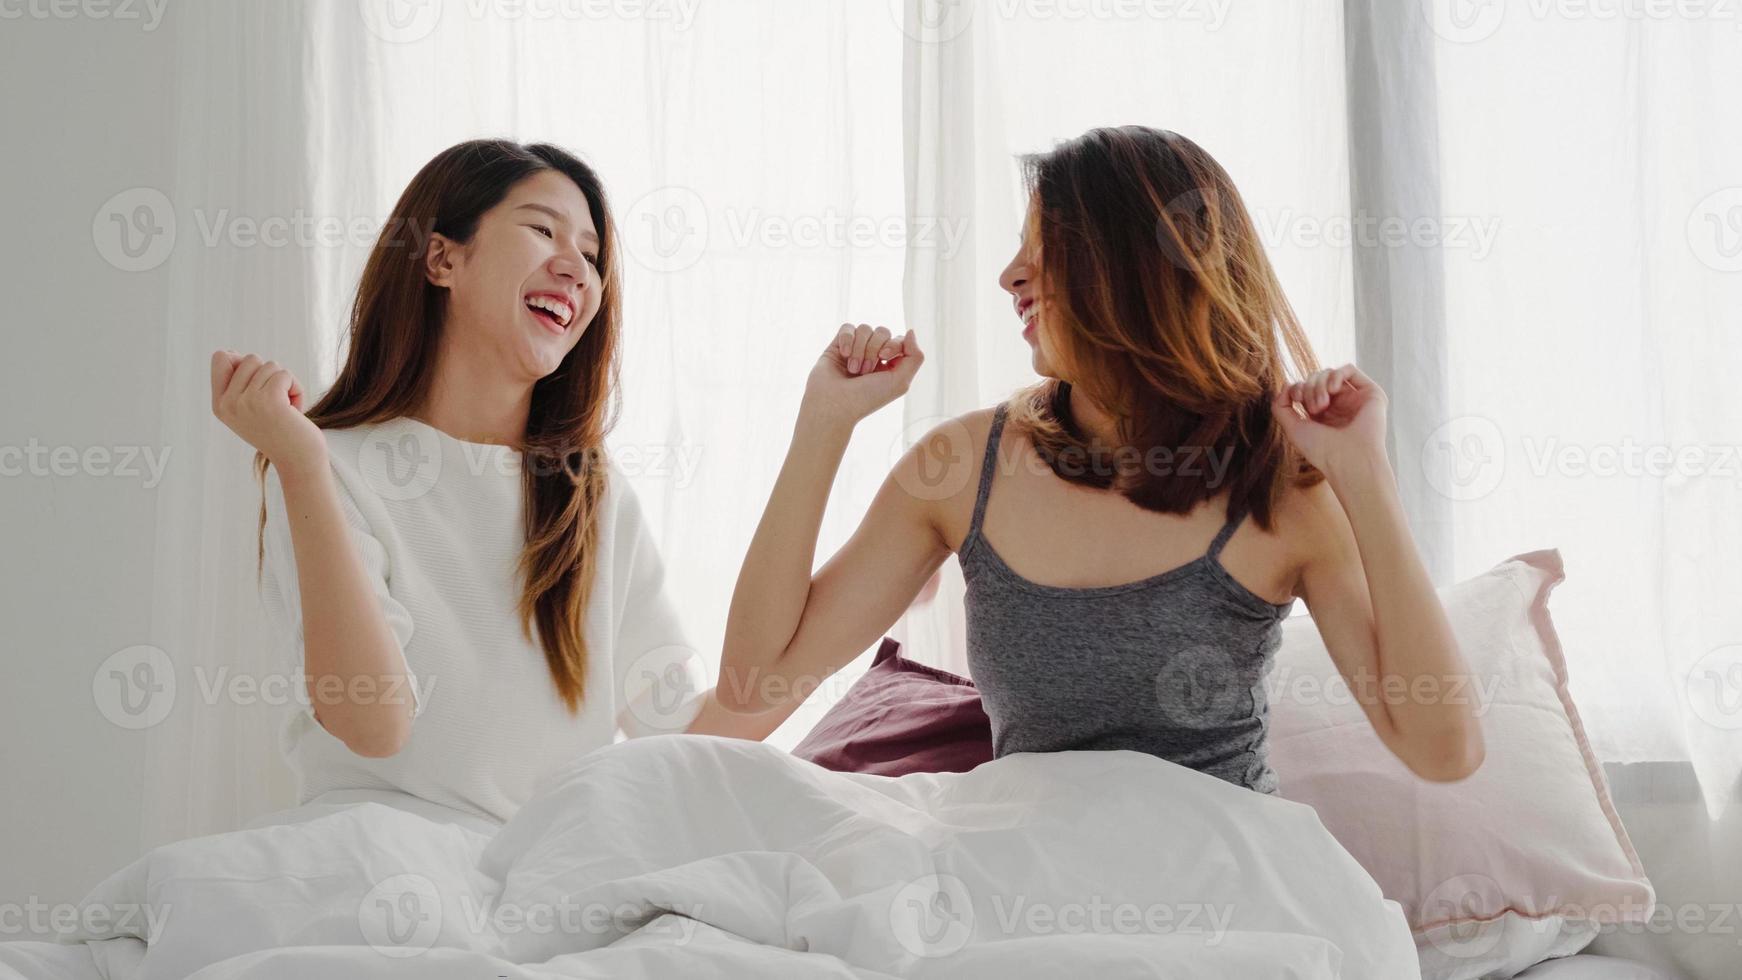 mooie jonge aziatische vrouwen lgbt lesbische gelukkige paar of meisjes vrienden dansen op streaming muziek met wild plezier in pyjama's op bed in tiener slaapkamer rondhangen thuis. leuke tijd thuis doorbrengen. foto